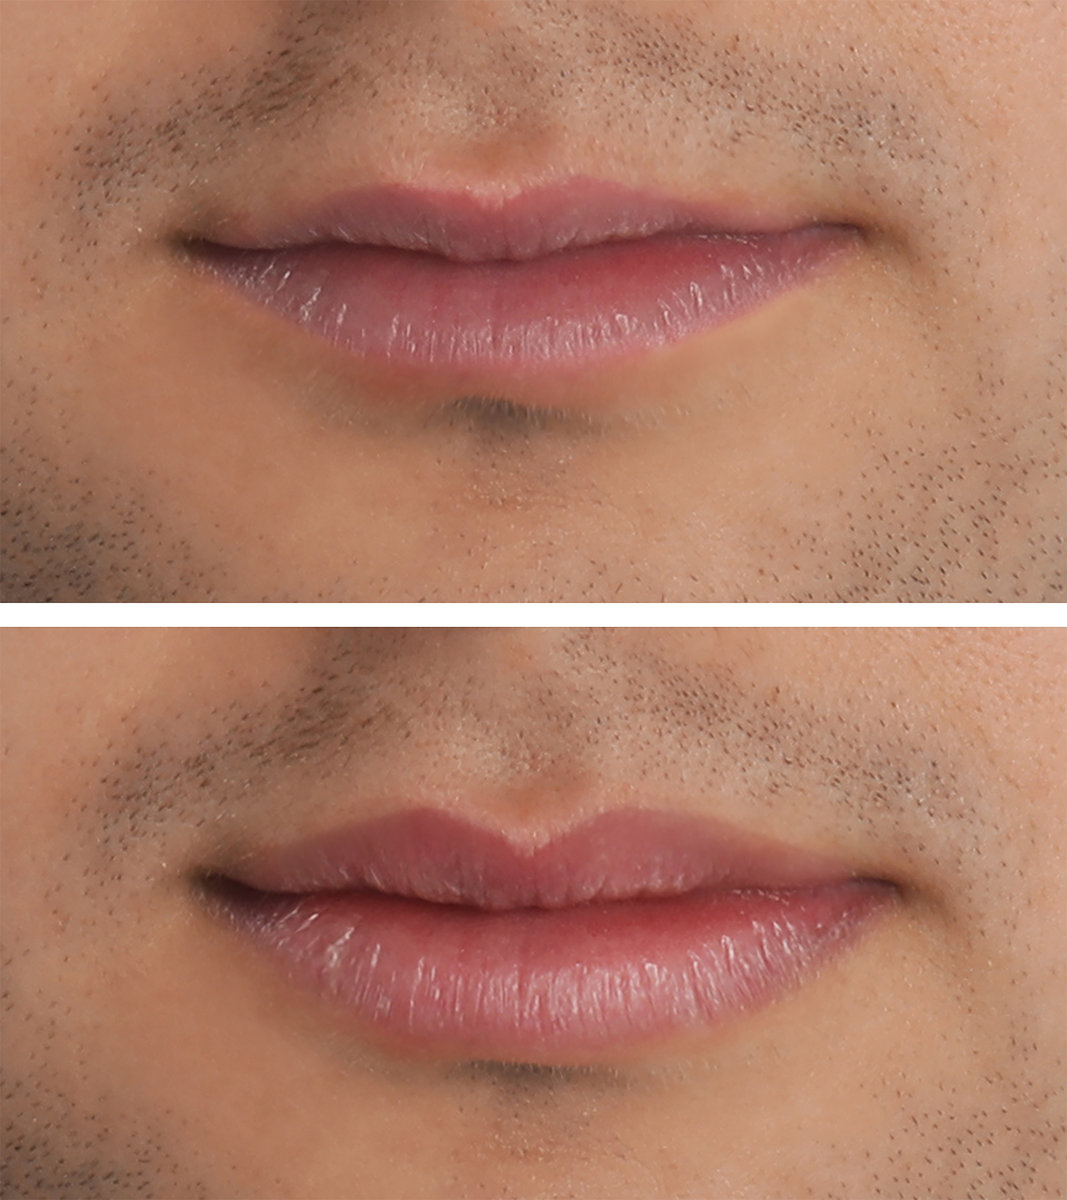 Lippen aufspritzen mit Hyaluron im Saarland für sinnliche und volle Lippen - das Bild zeigt einen Vorher-Nachher-Vergleich